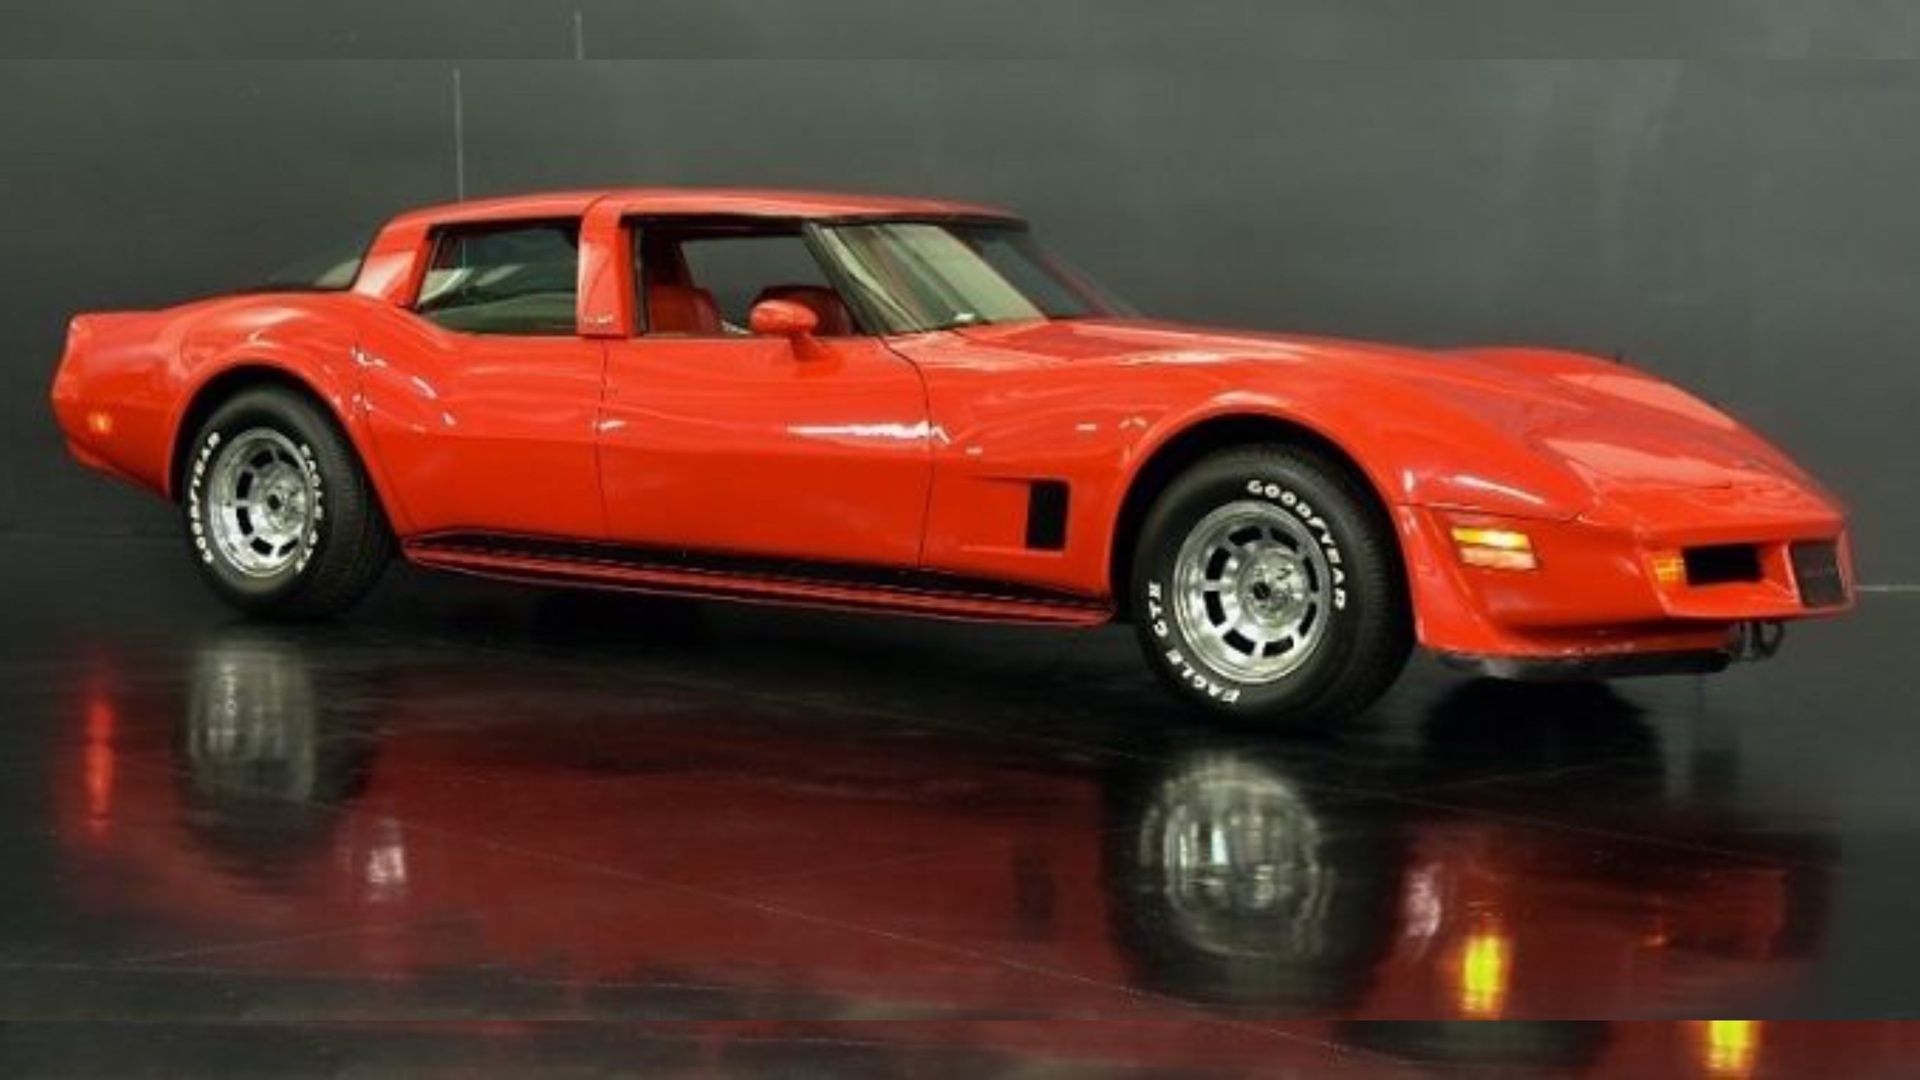 Red four-door Corvette